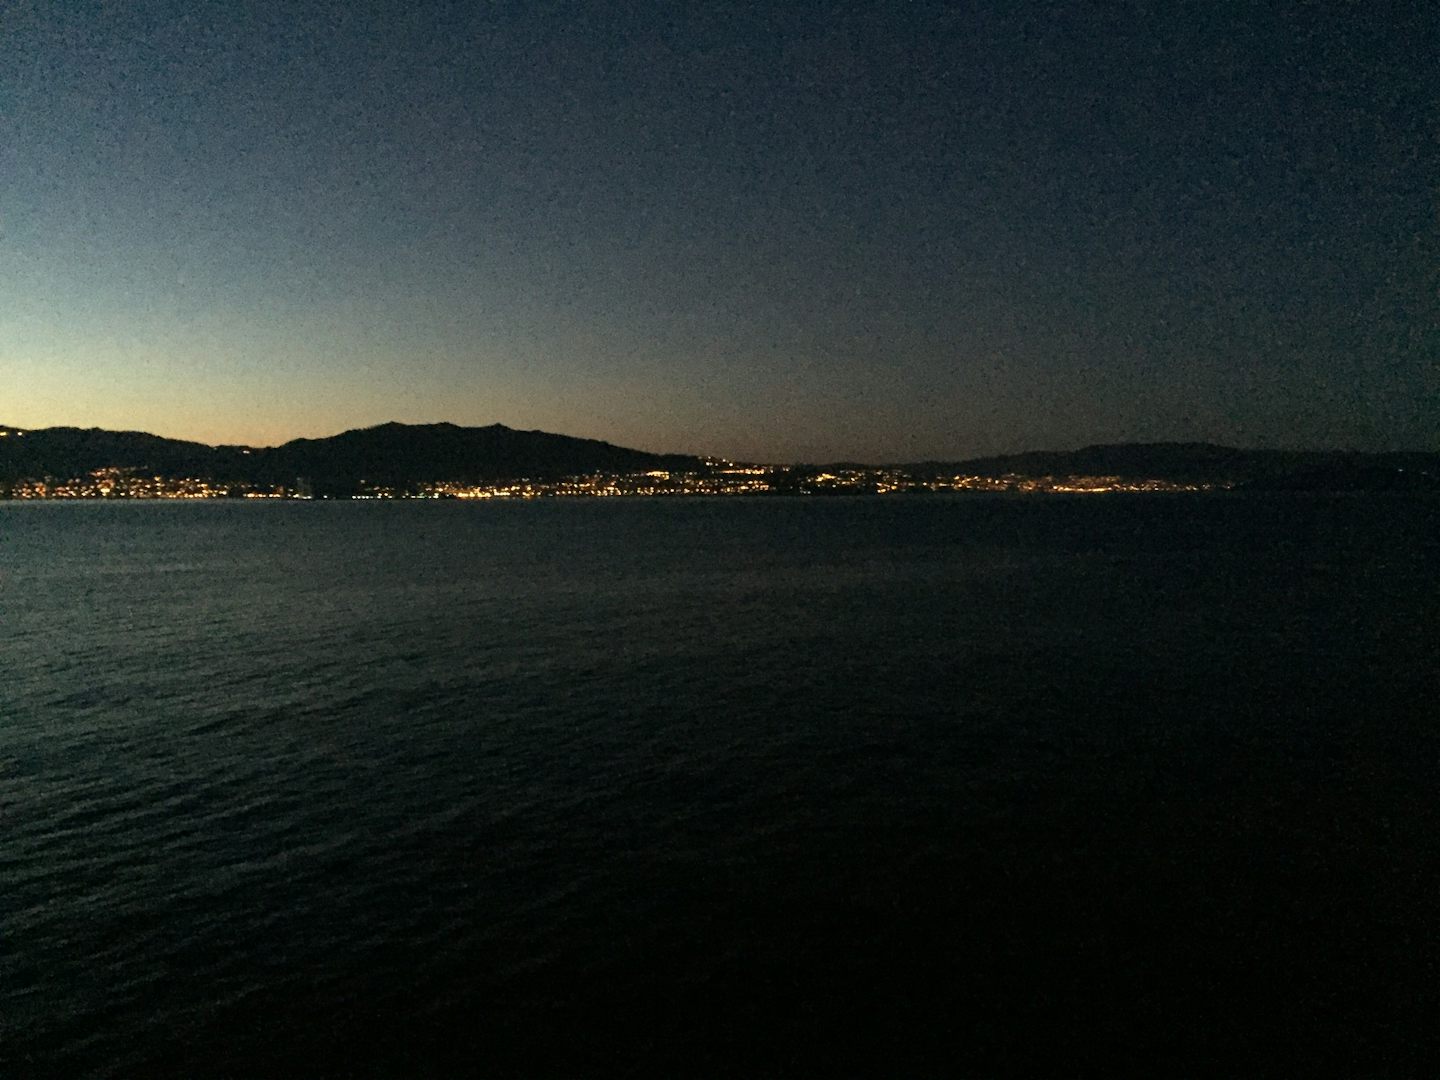 Arrival in Vigo